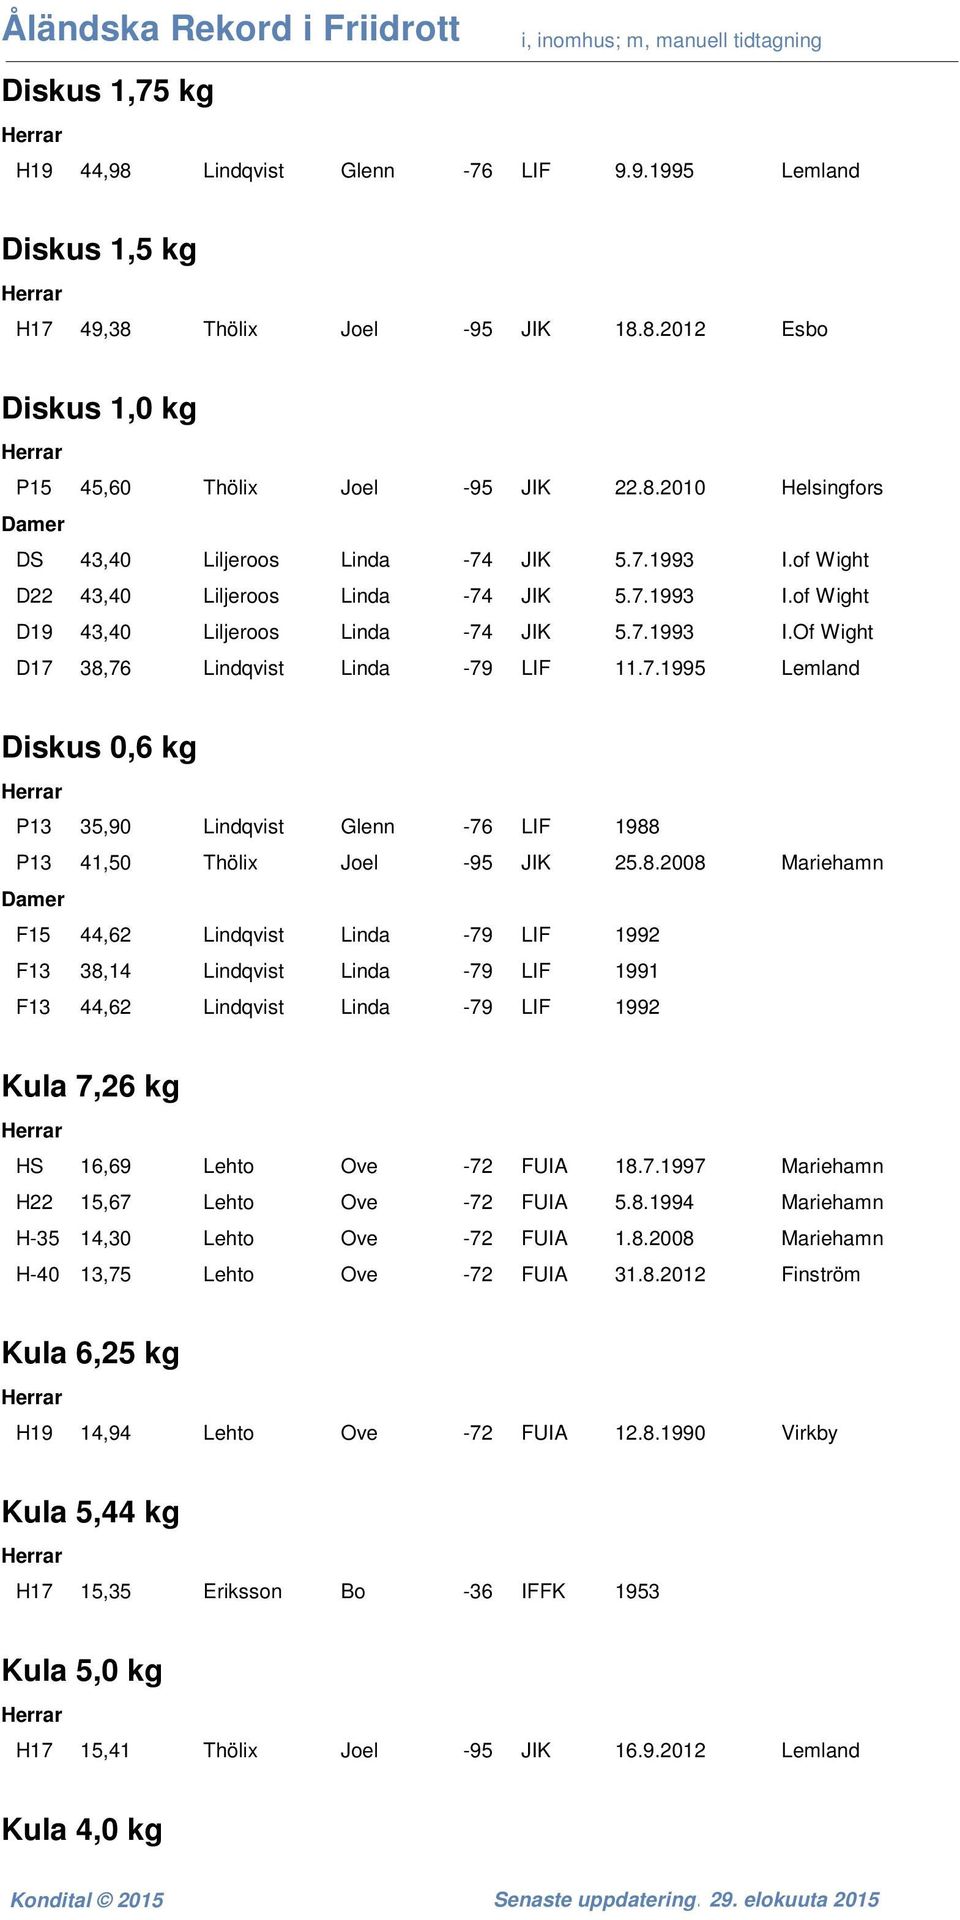 8.2008 Mariehamn F15 44,62 Lindqvist Linda -79 LIF 1992 F13 38,14 Lindqvist Linda -79 LIF 1991 F13 44,62 Lindqvist Linda -79 LIF 1992 Kula 7,26 kg HS 16,69 Lehto Ove -72 FUIA 18.7.1997 Mariehamn H22 15,67 Lehto Ove -72 FUIA 5.